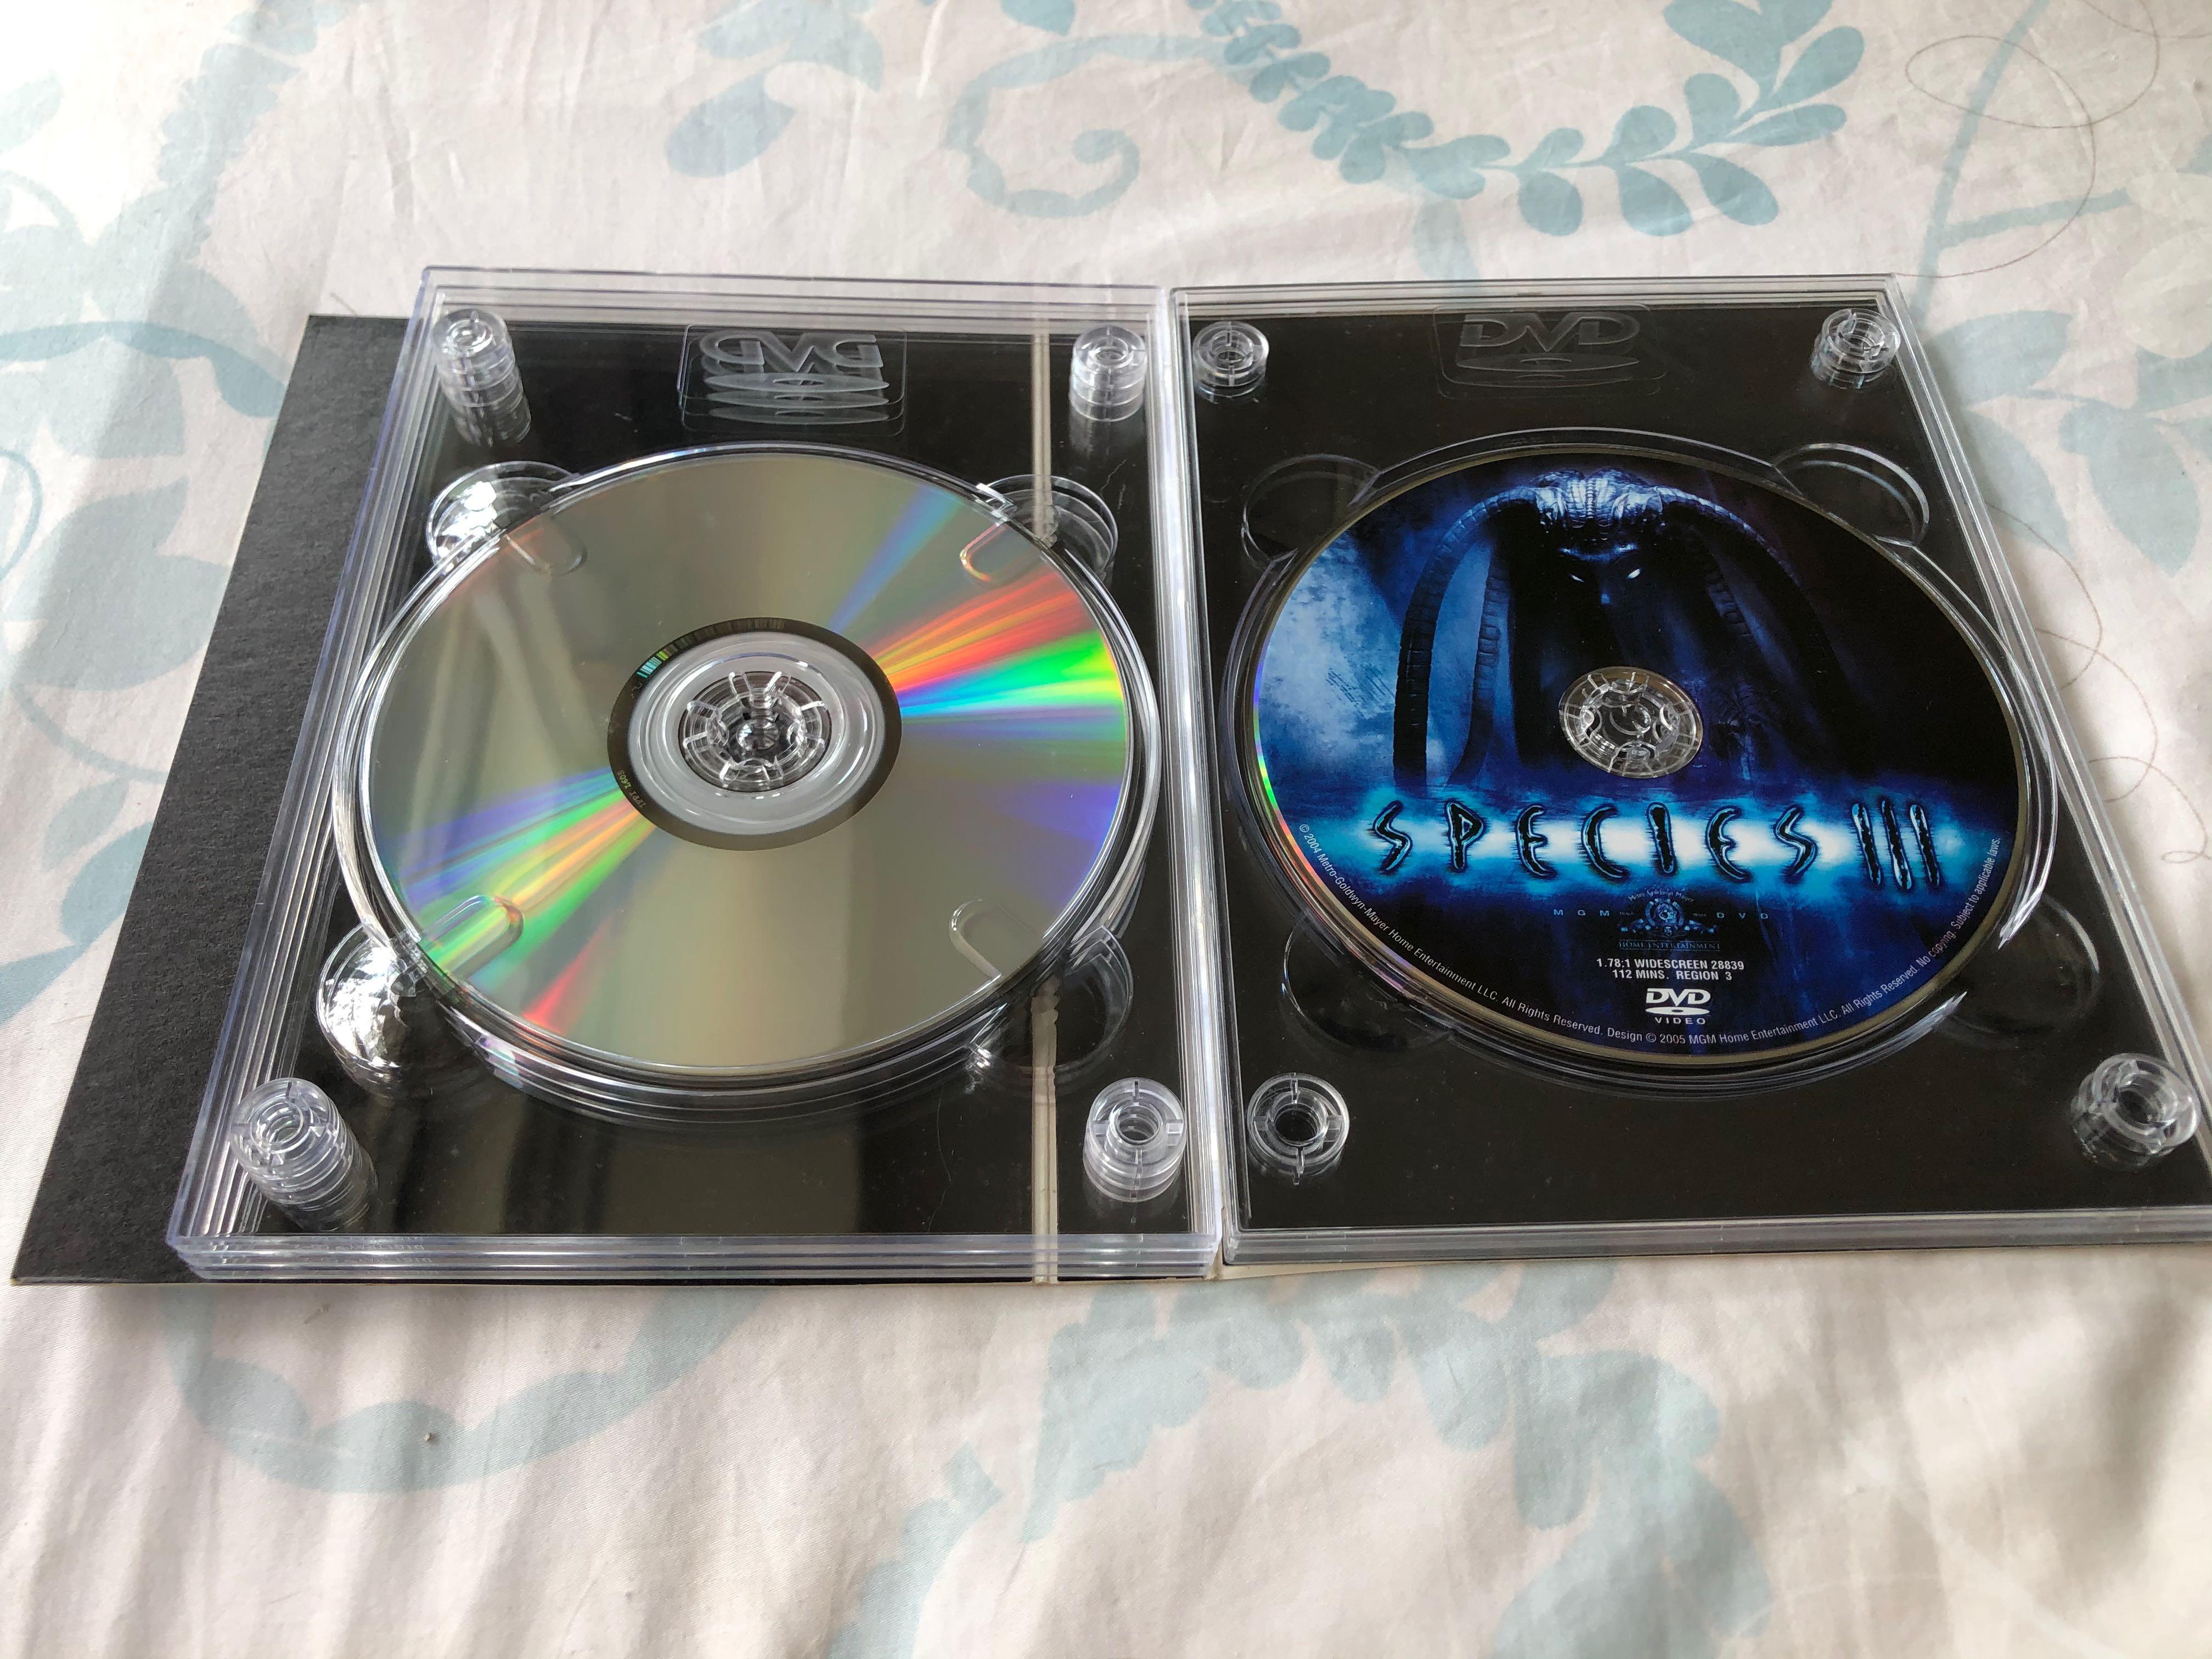 DVD丨異種四部曲/ Species Collection (5DVD珍藏套裝), 興趣及遊戲